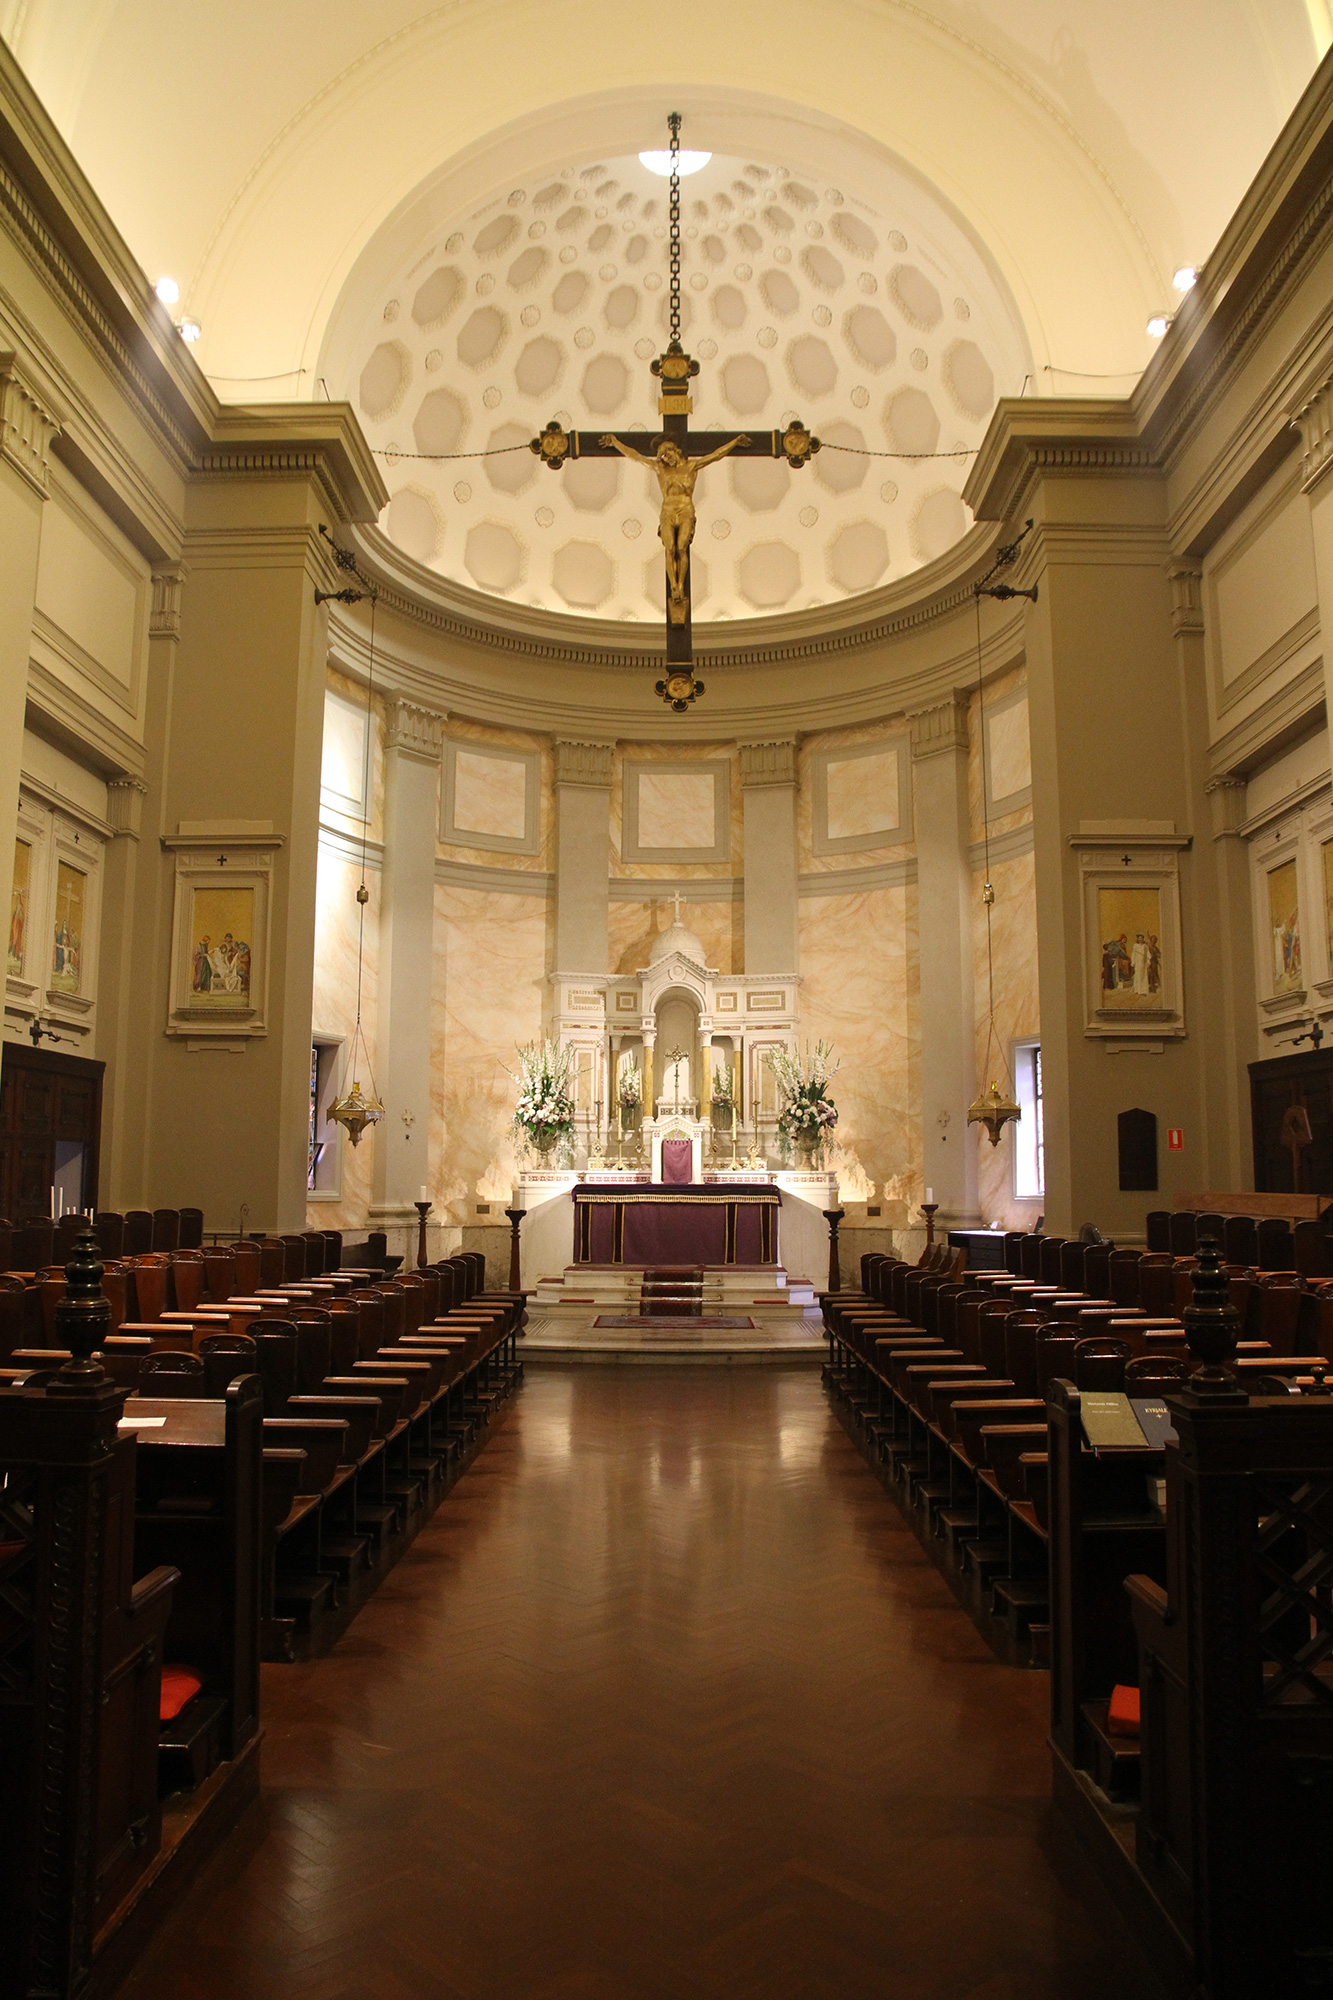 Main altar